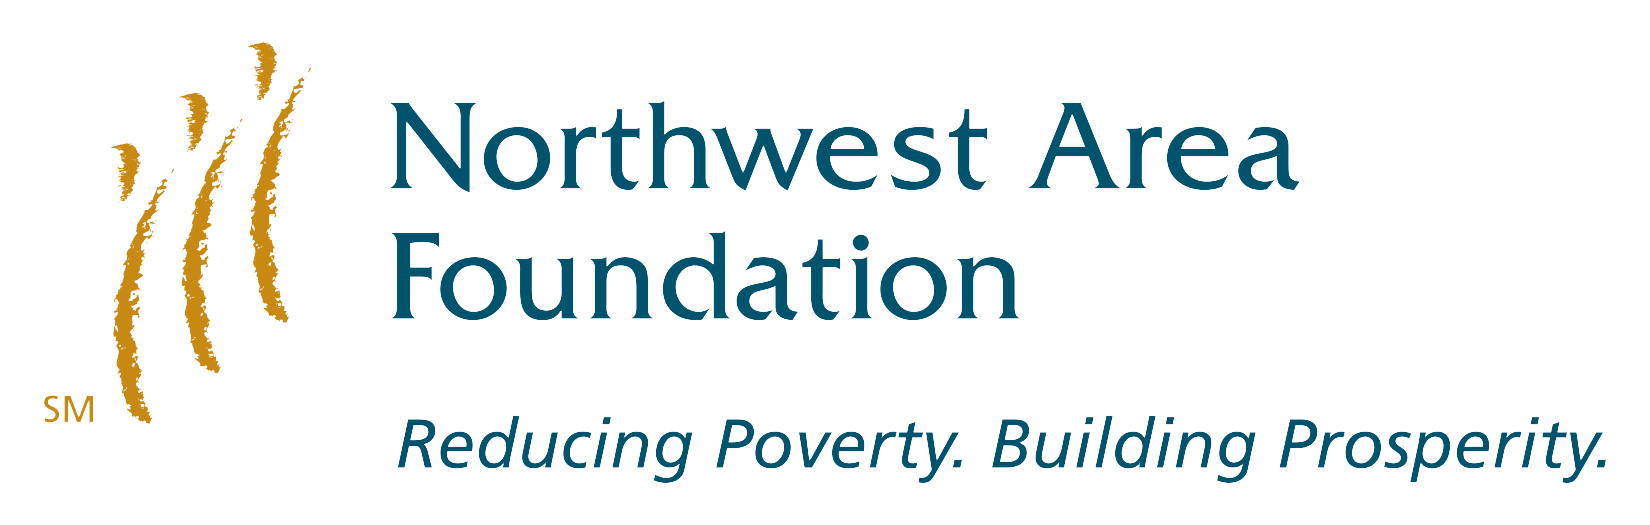 Northwest Area Foundation logo